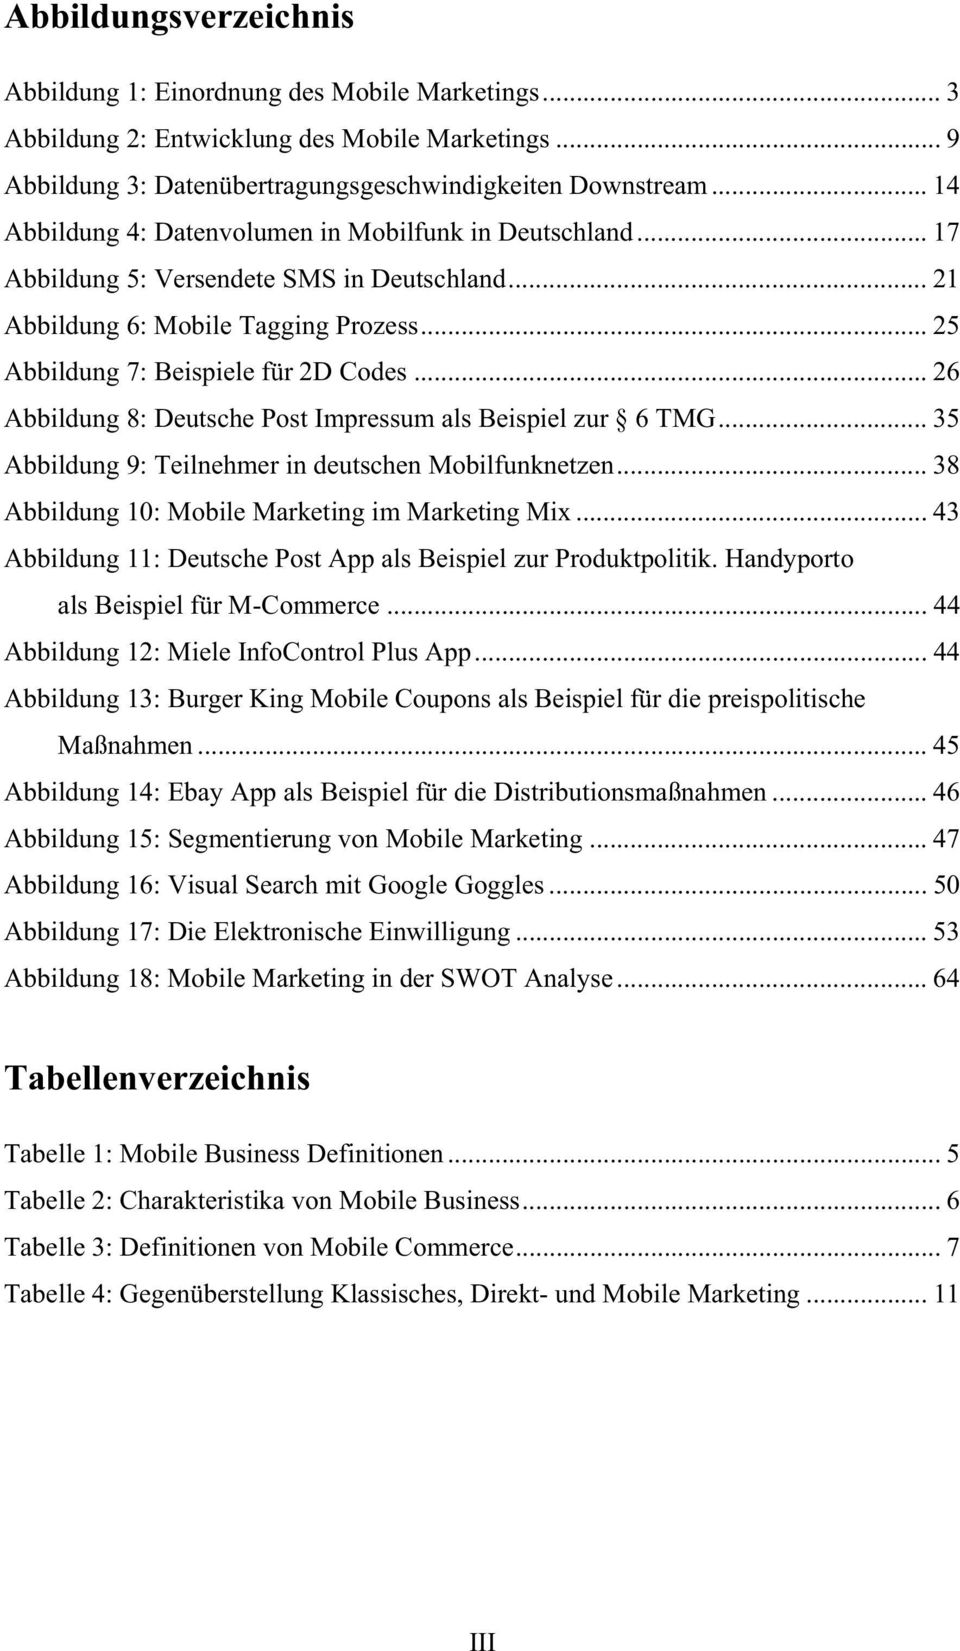 .. 26 Abbildung 8: Deutsche Post Impressum als Beispiel zur 6 TMG... 35 Abbildung 9: Teilnehmer in deutschen Mobilfunknetzen... 38 Abbildung 10: Mobile Marketing im Marketing Mix.